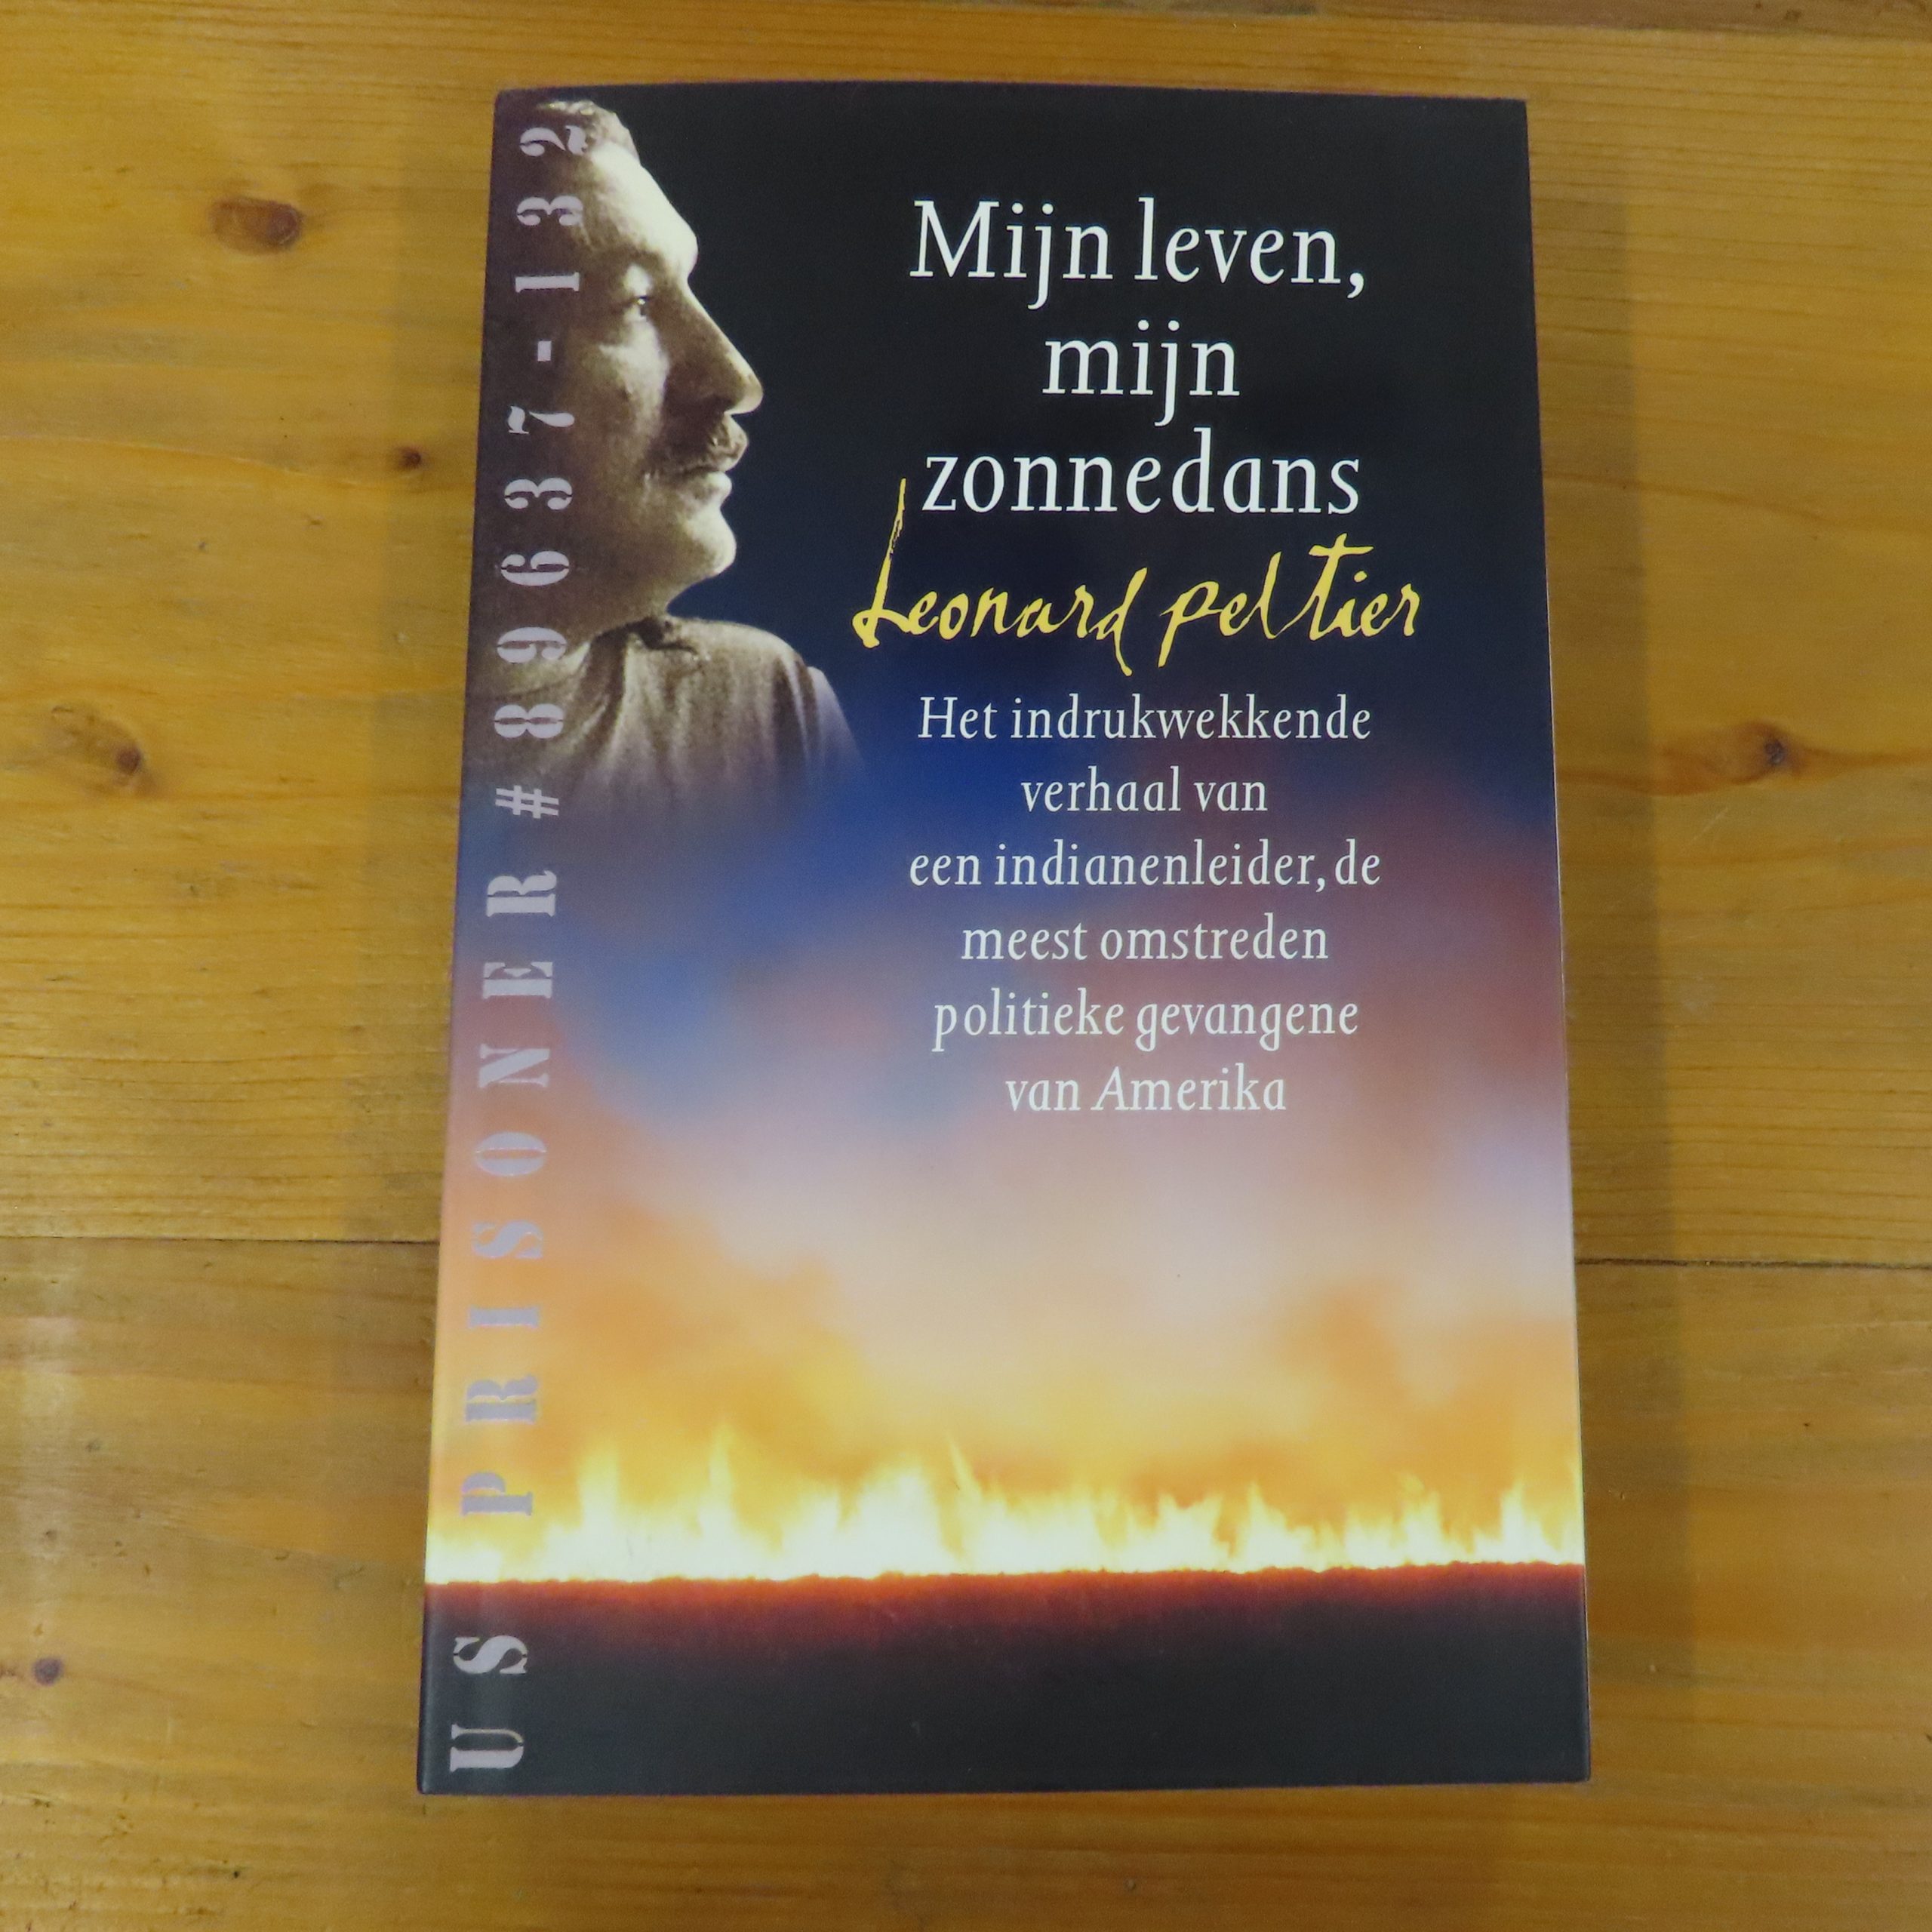 Boek “Mijn leven, mijn zonnedans” van Leonard Peltier